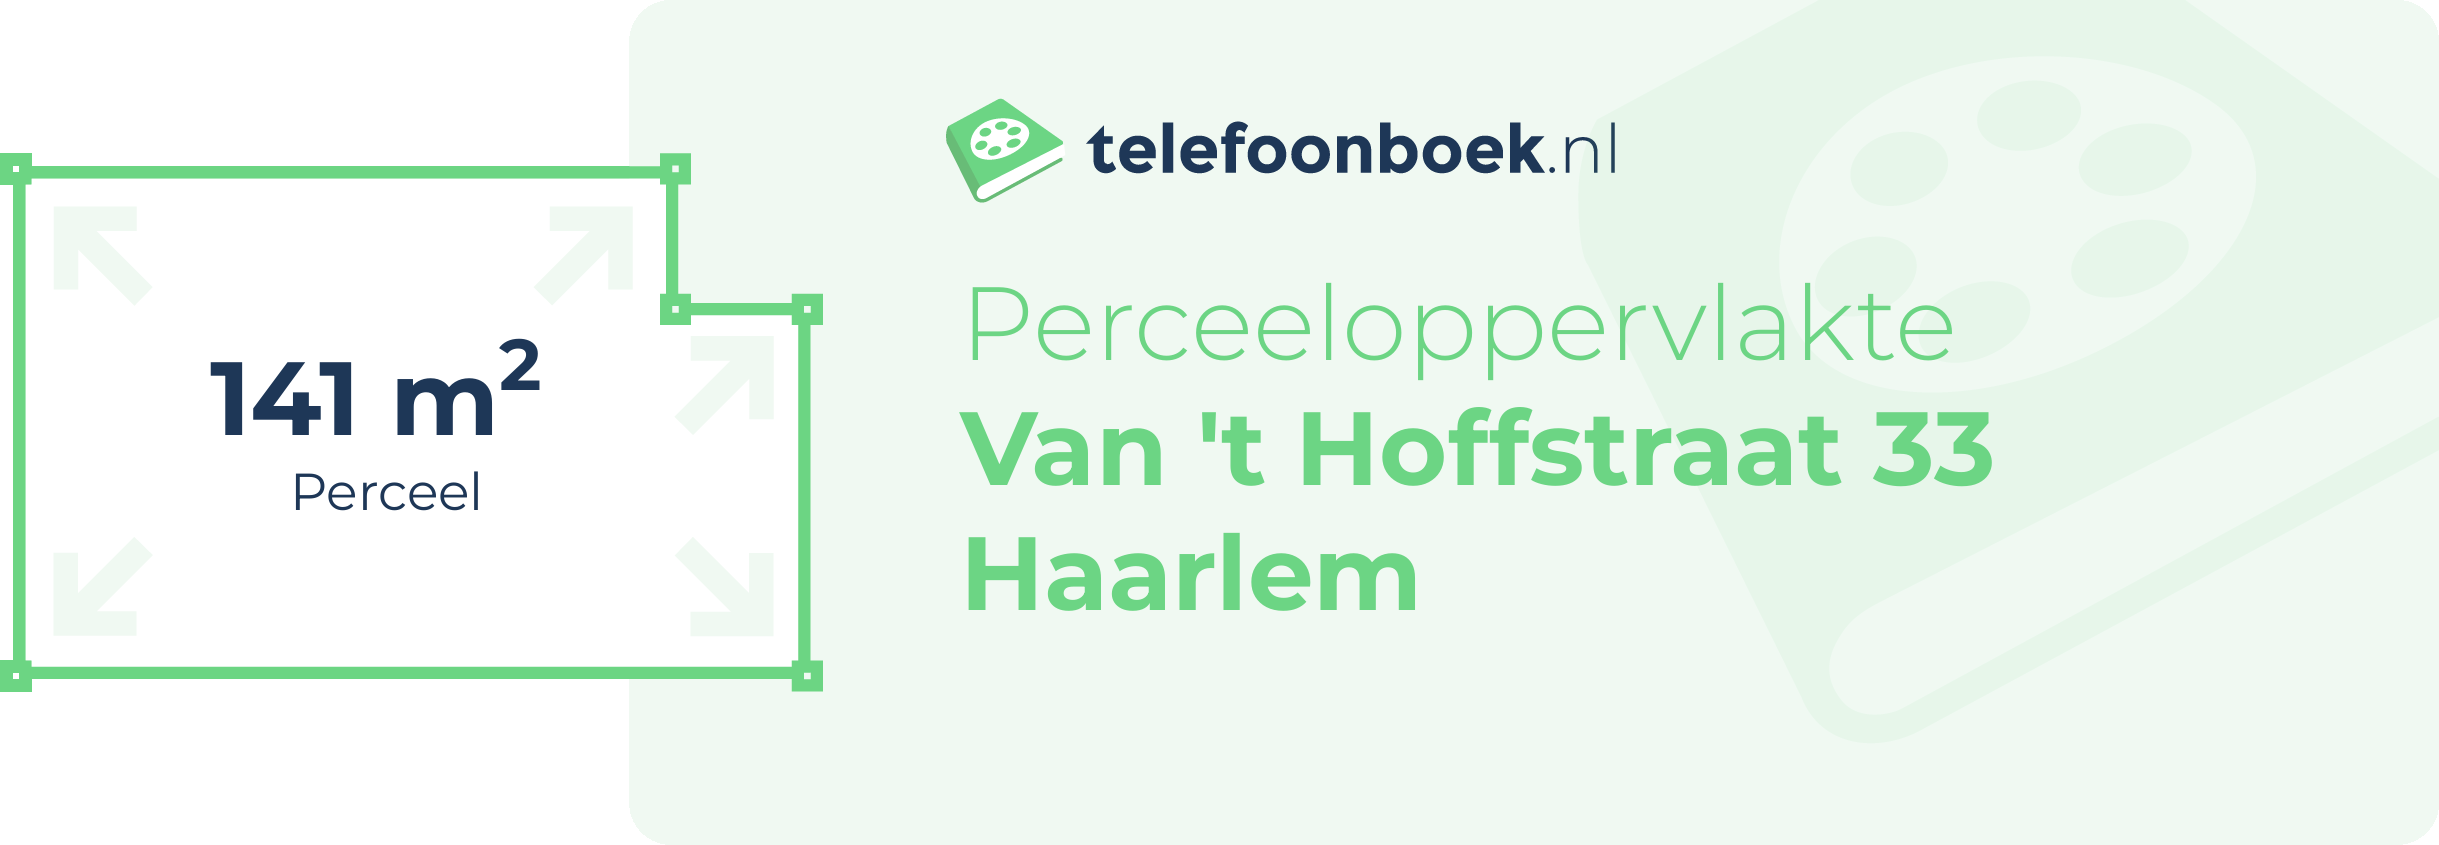 Perceeloppervlakte Van 't Hoffstraat 33 Haarlem